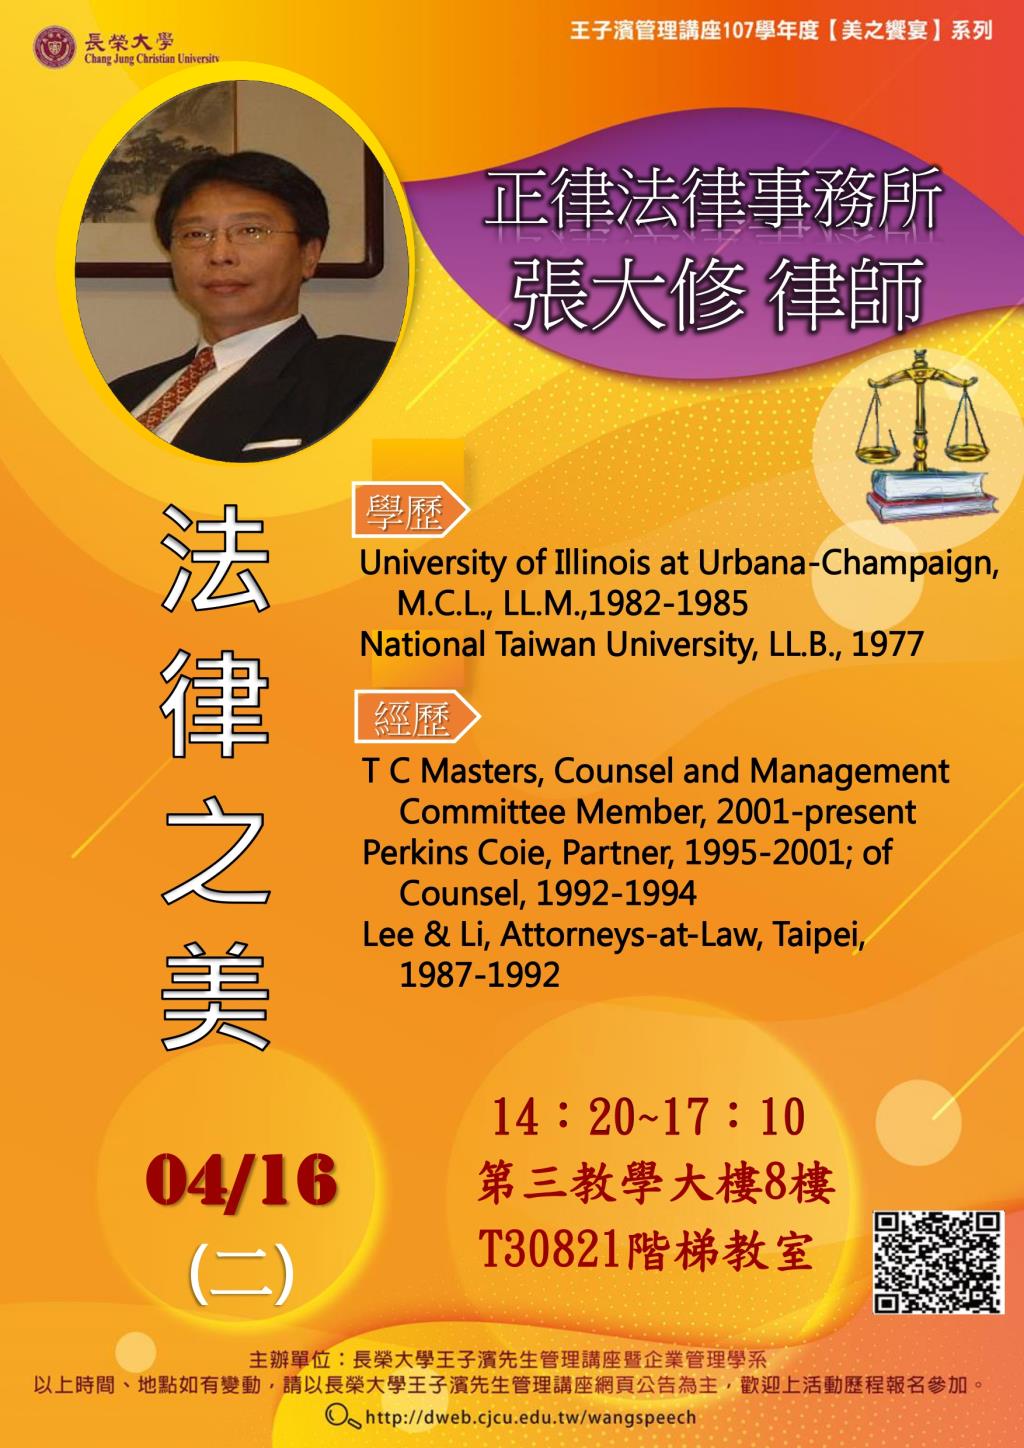 敬邀參加本週二下午(04/16)王子濱先生管理講座---正律法律事務所 張大修律師